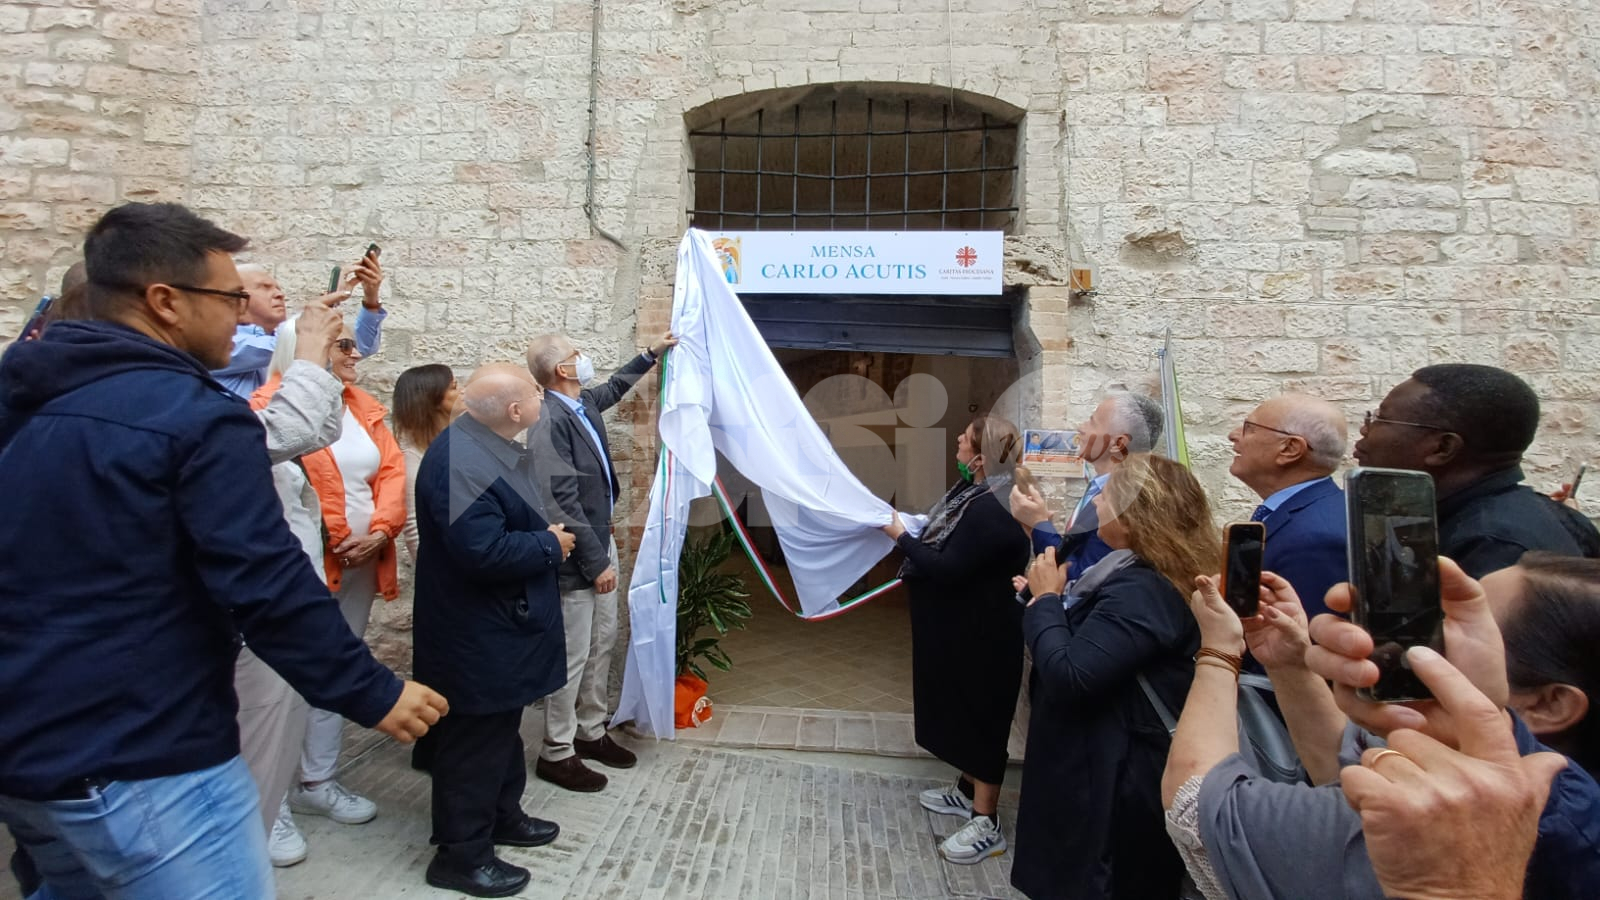 Mensa Carlo Acutis, ad Assisi nasce un luogo di ritrovo e aiuto per i meno fortunati (foto)